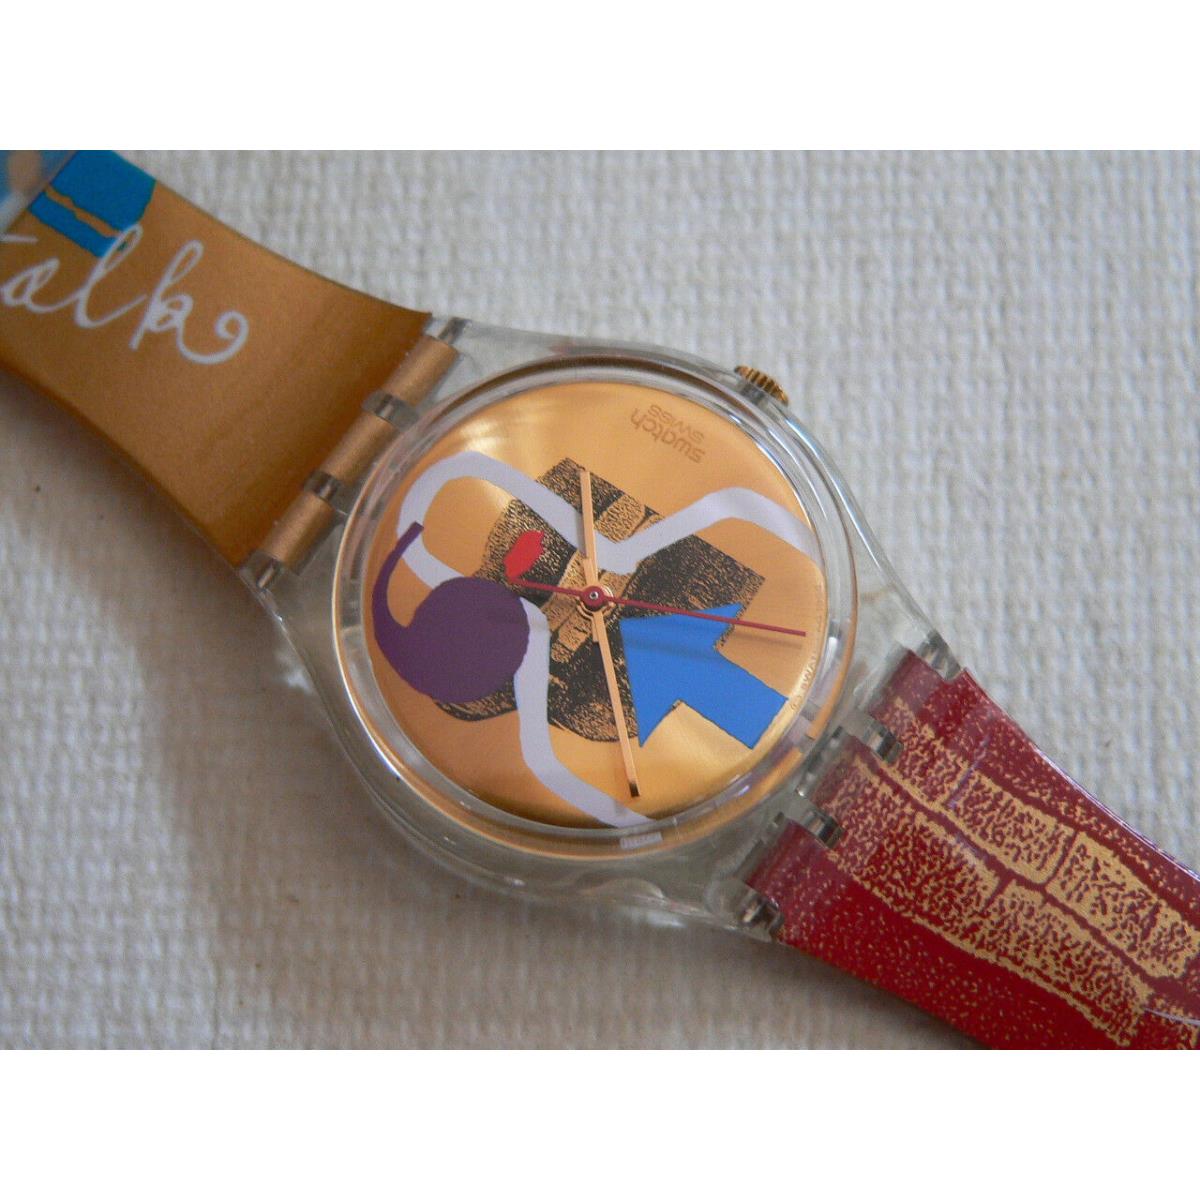 1997 Swatch Watch Lipstick Designed By Donna Muir Su Huntley GK248